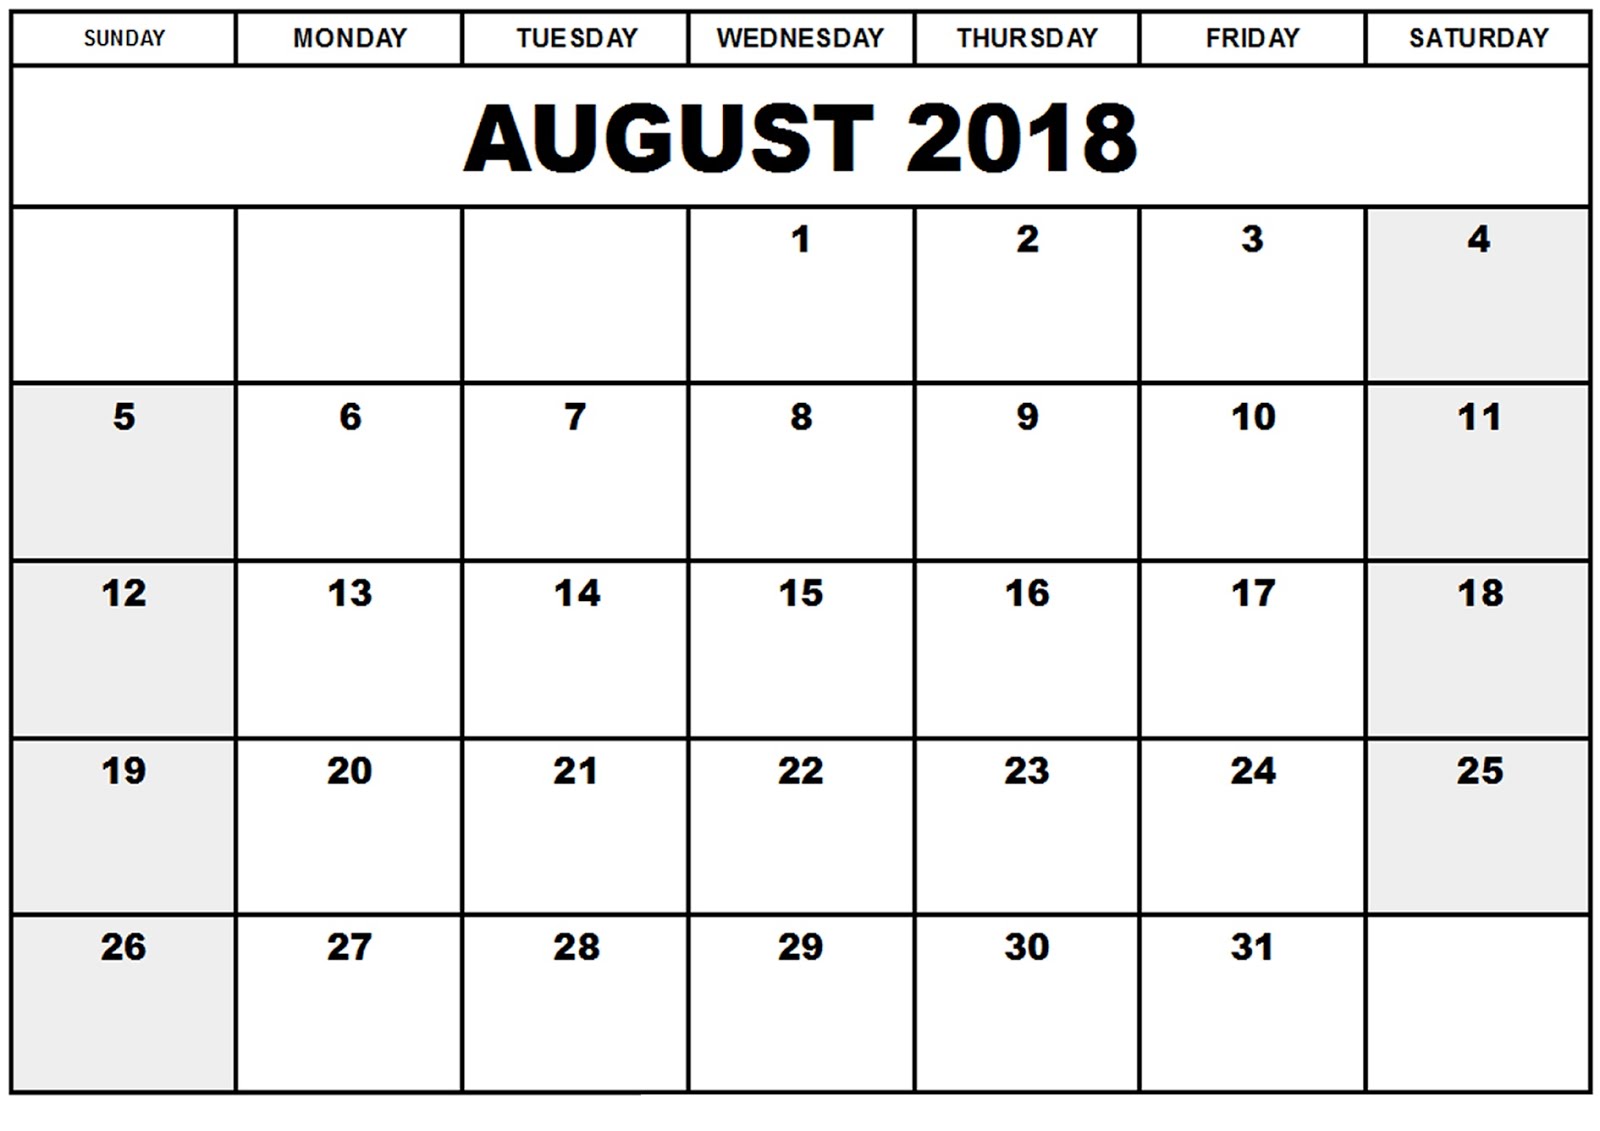 August 2018 Calendar Template 2